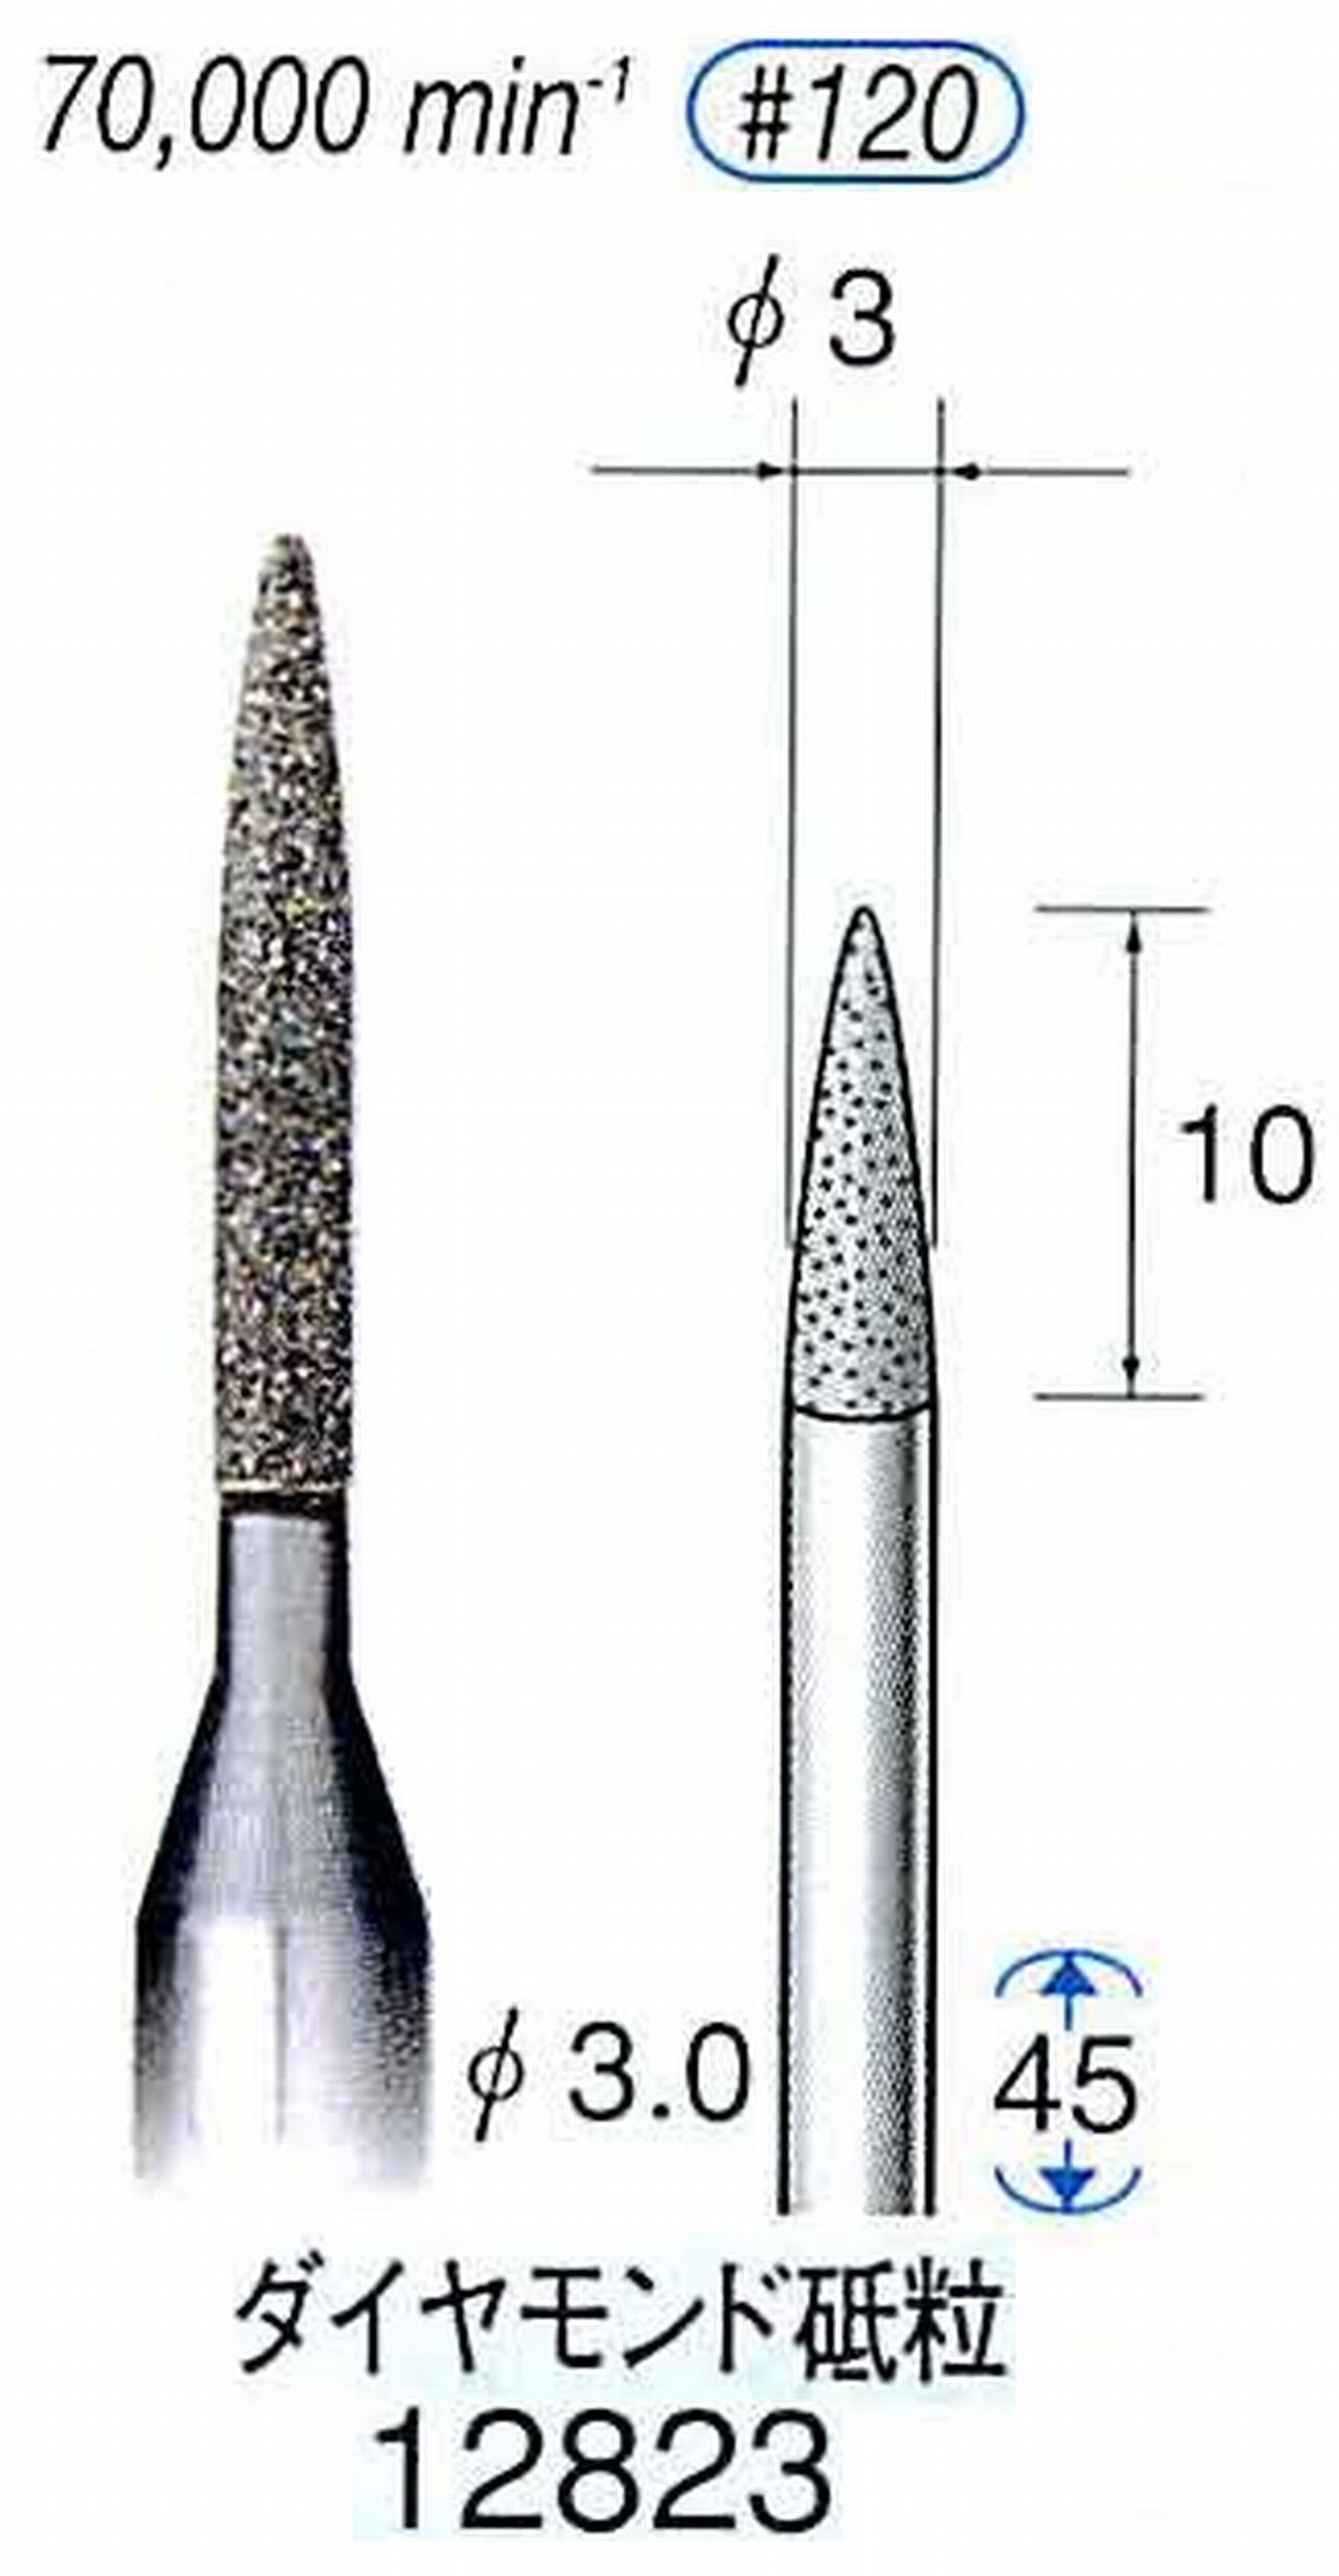 ナカニシ/NAKANISHI クラフト・ホビー用ダイヤモンドバー ダイヤモンド砥粒 軸径(シャンク)φ3.0mm 12823